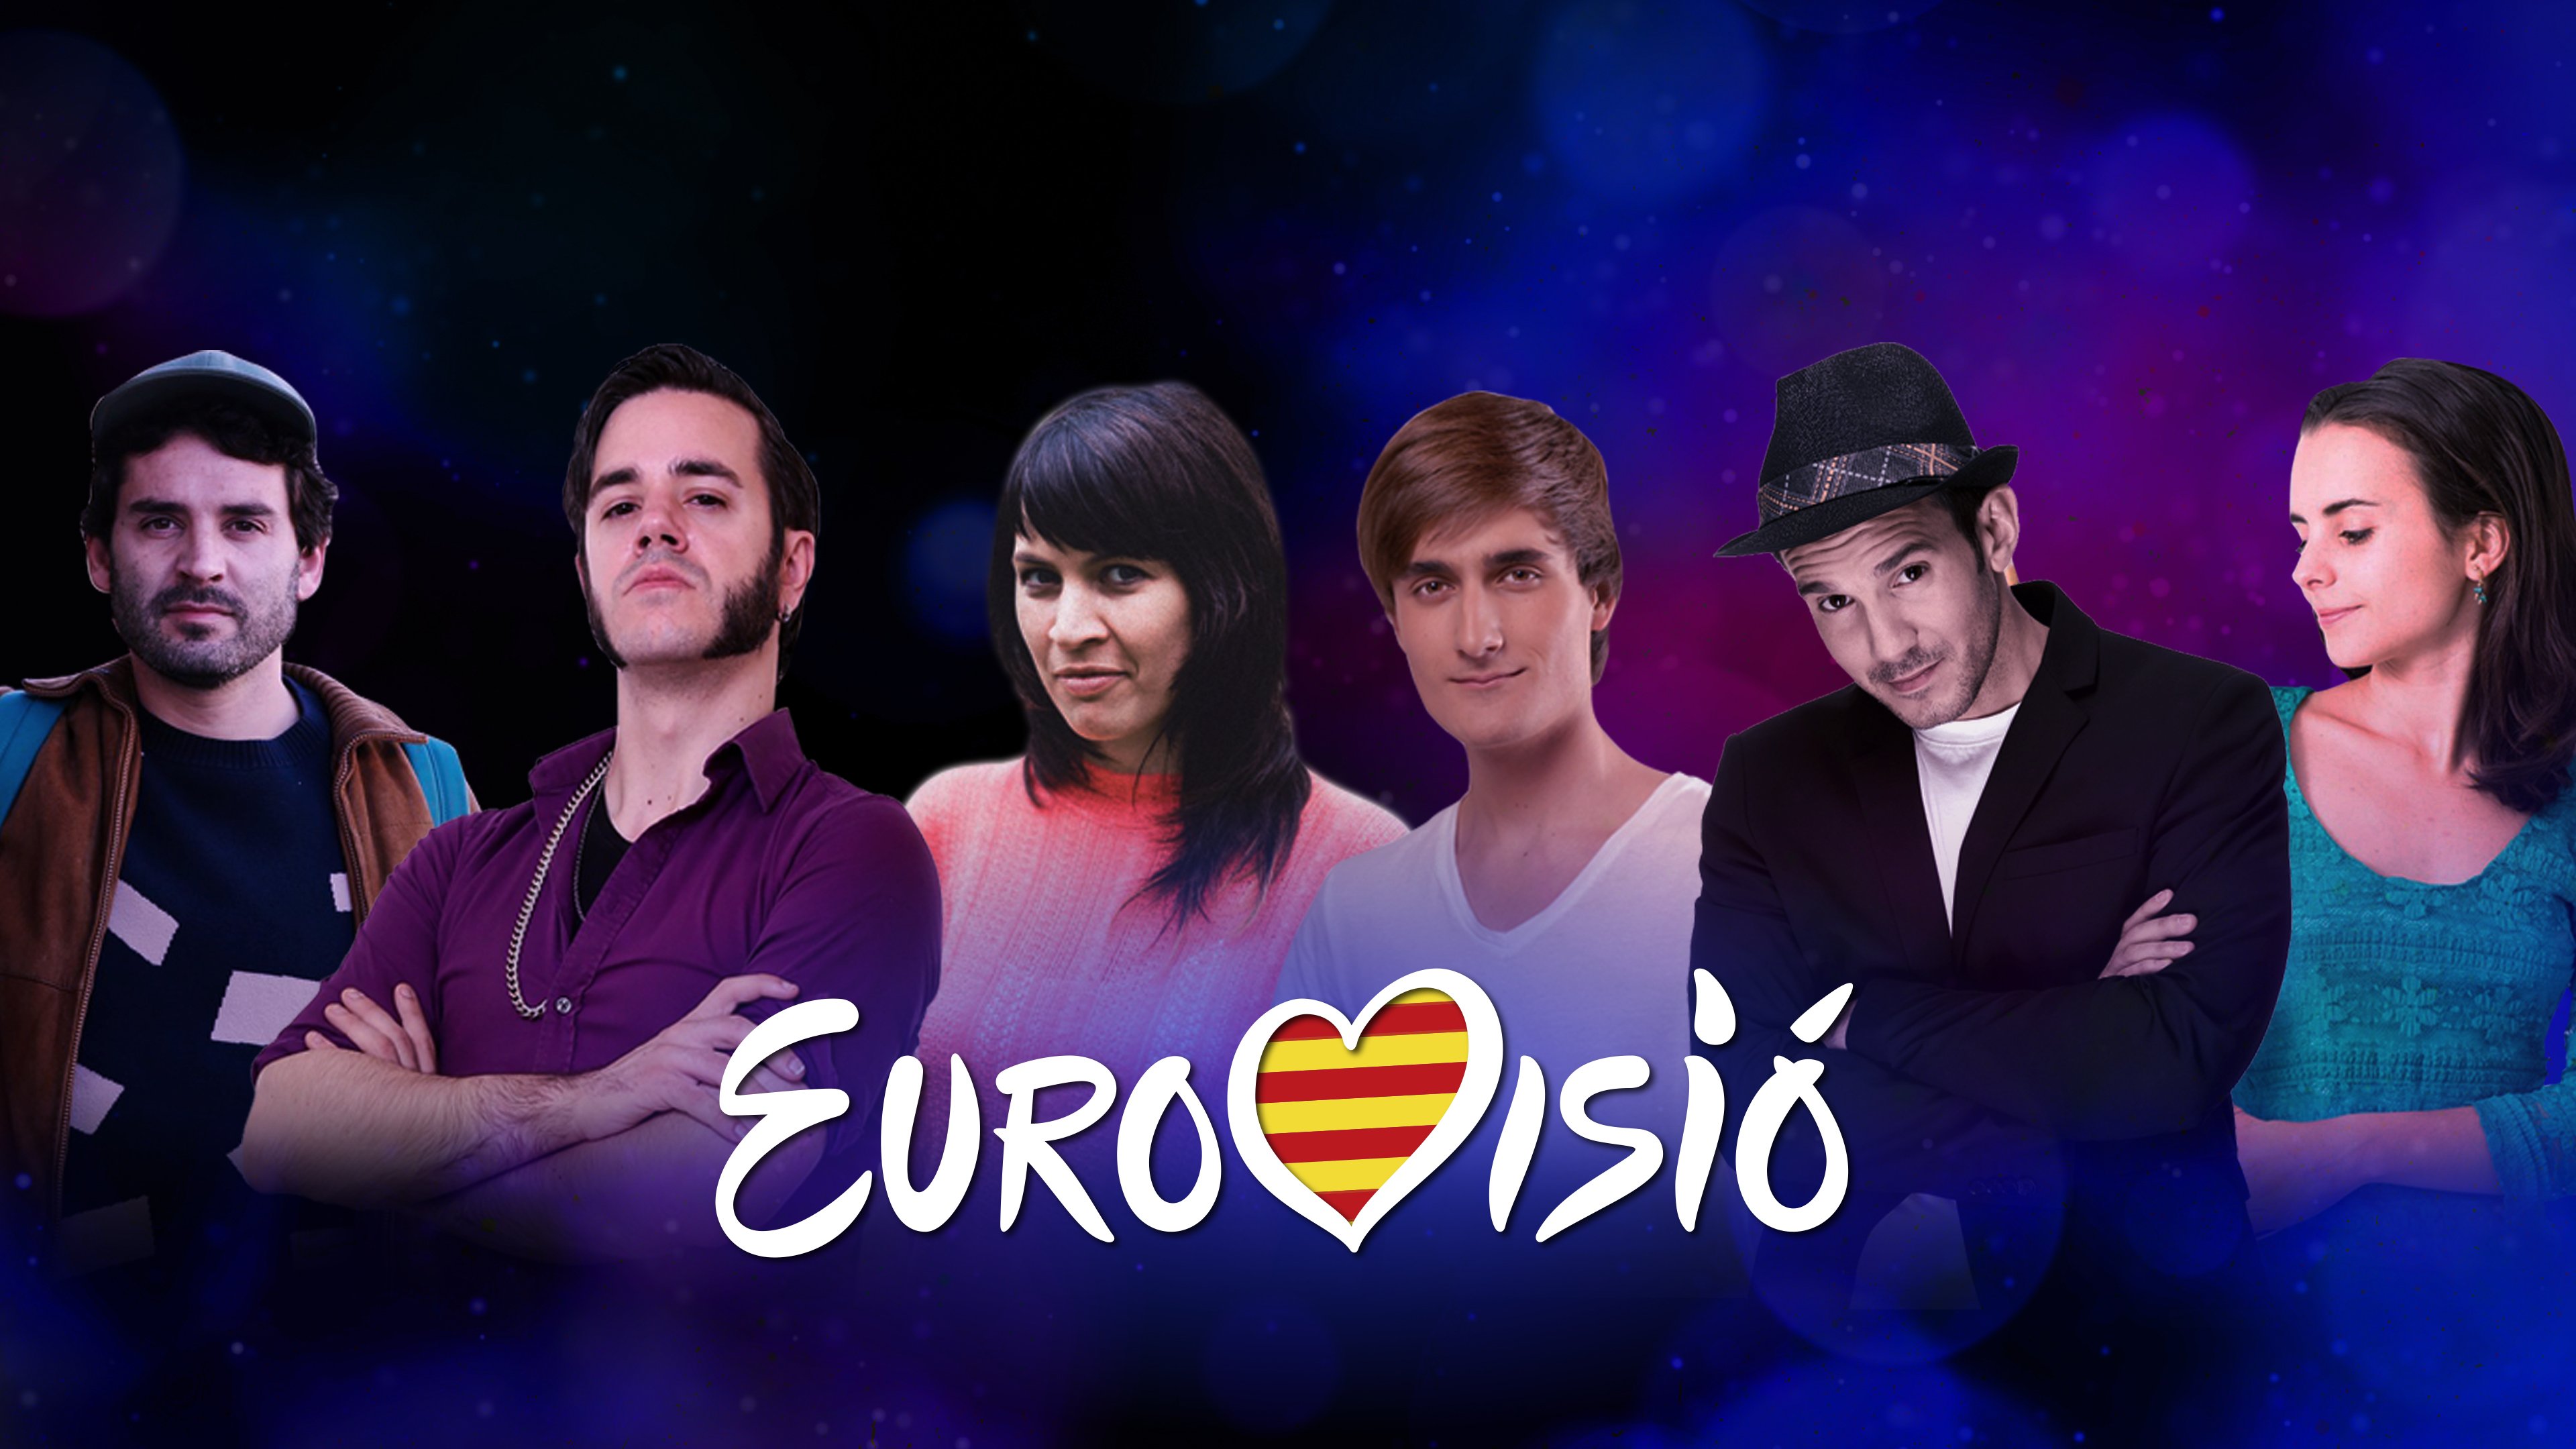 La UER dice no a TV3 mientras seis artistas catalanes se plantean representarla en Eurovisión